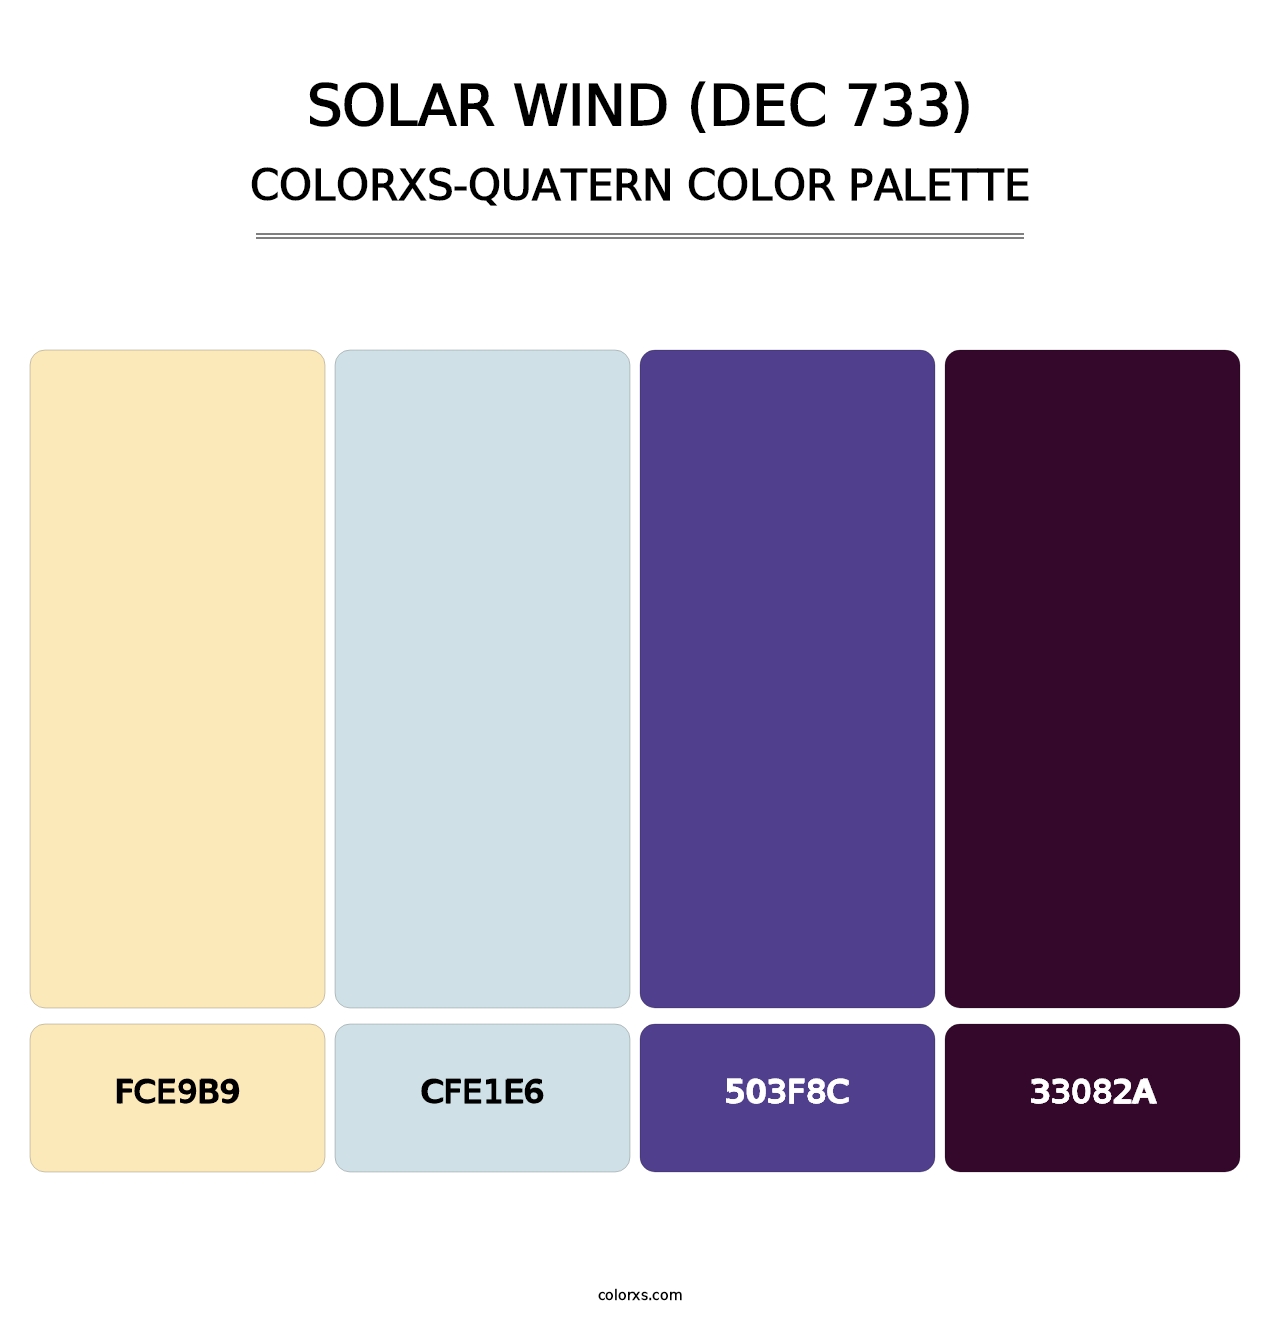 Solar Wind (DEC 733) - Colorxs Quatern Palette